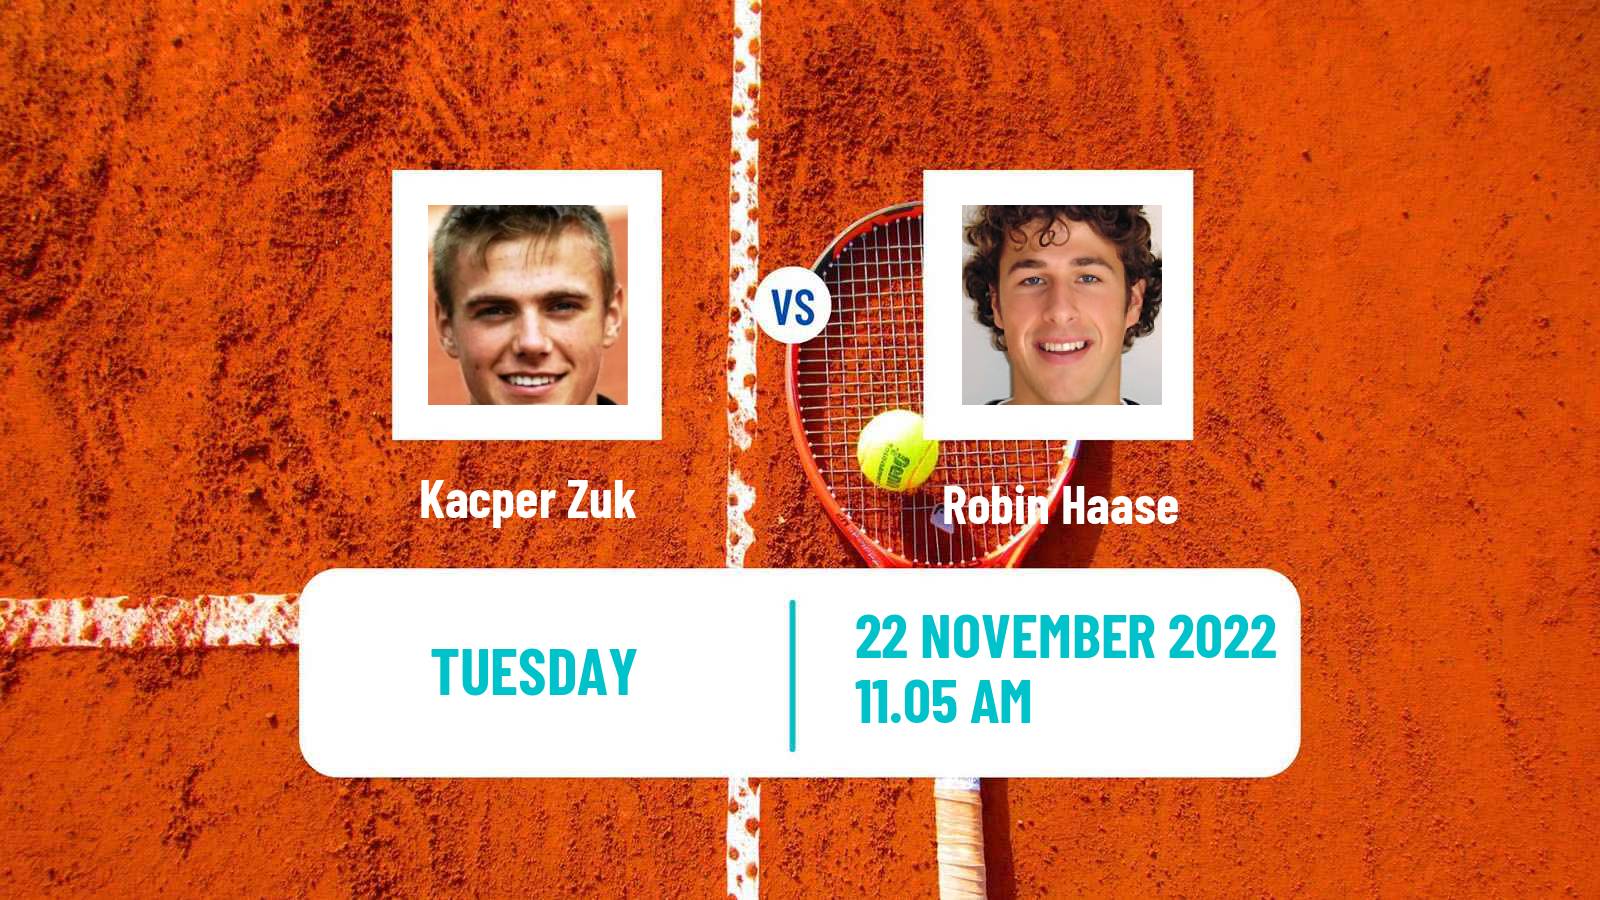 Tennis ATP Challenger Kacper Zuk - Robin Haase